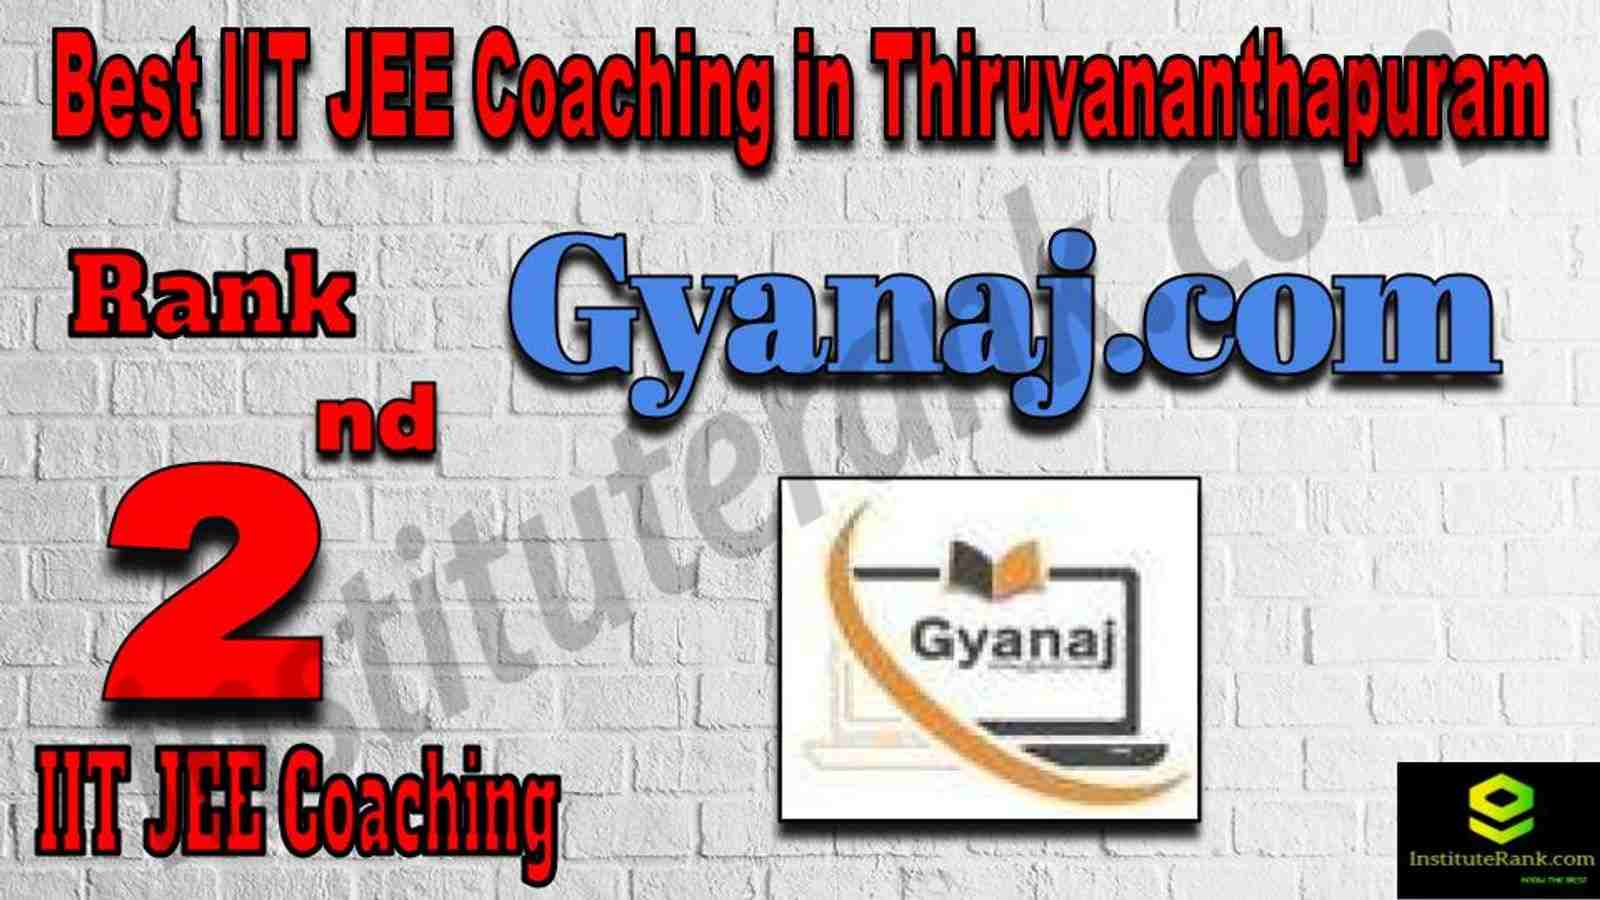 2nd Best IIT JEE Coaching in Thiruvananthapuram